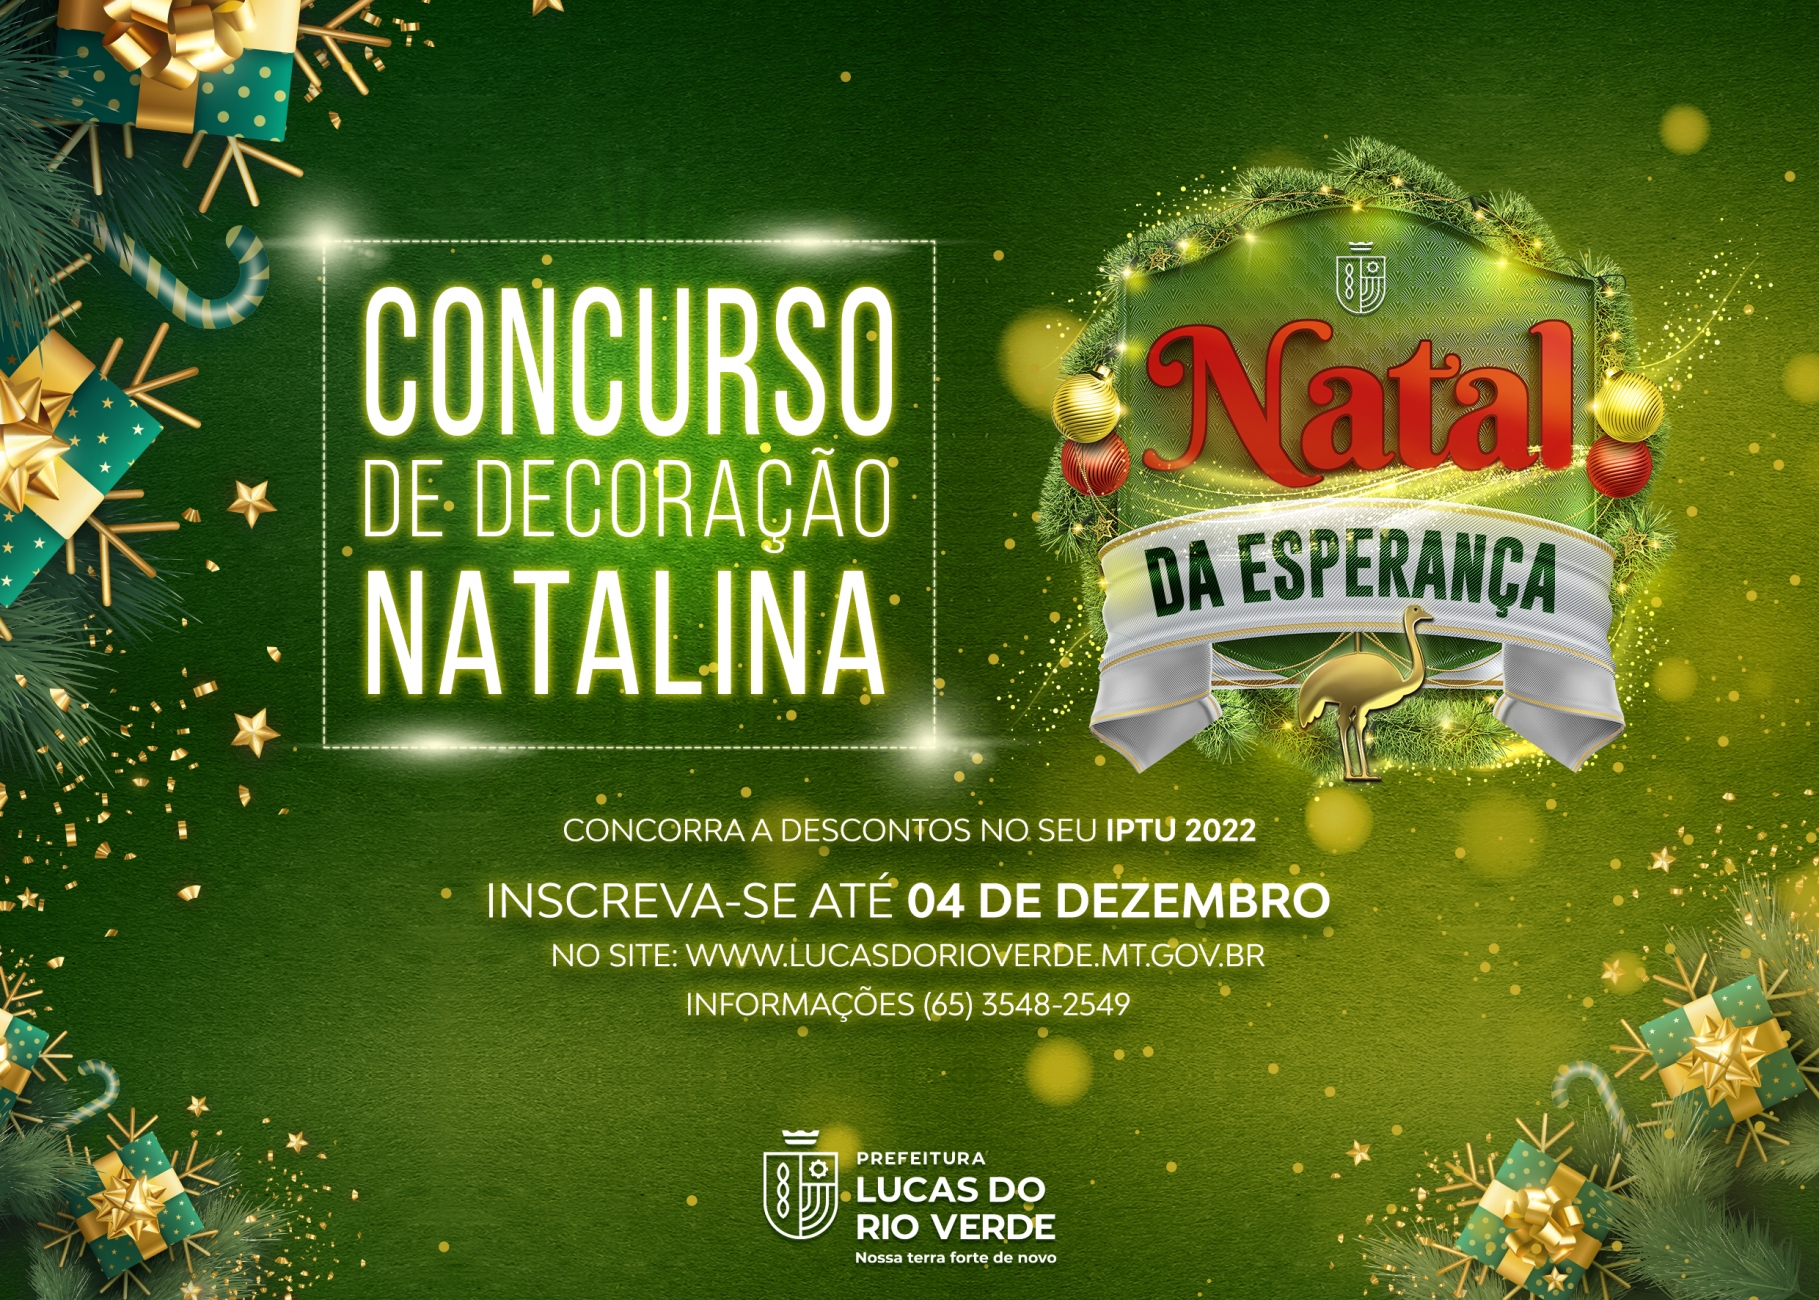 Inscrições para o concurso de decoração natalina seguem até dia 04 |  Prefeitura de Lucas do Rio Verde